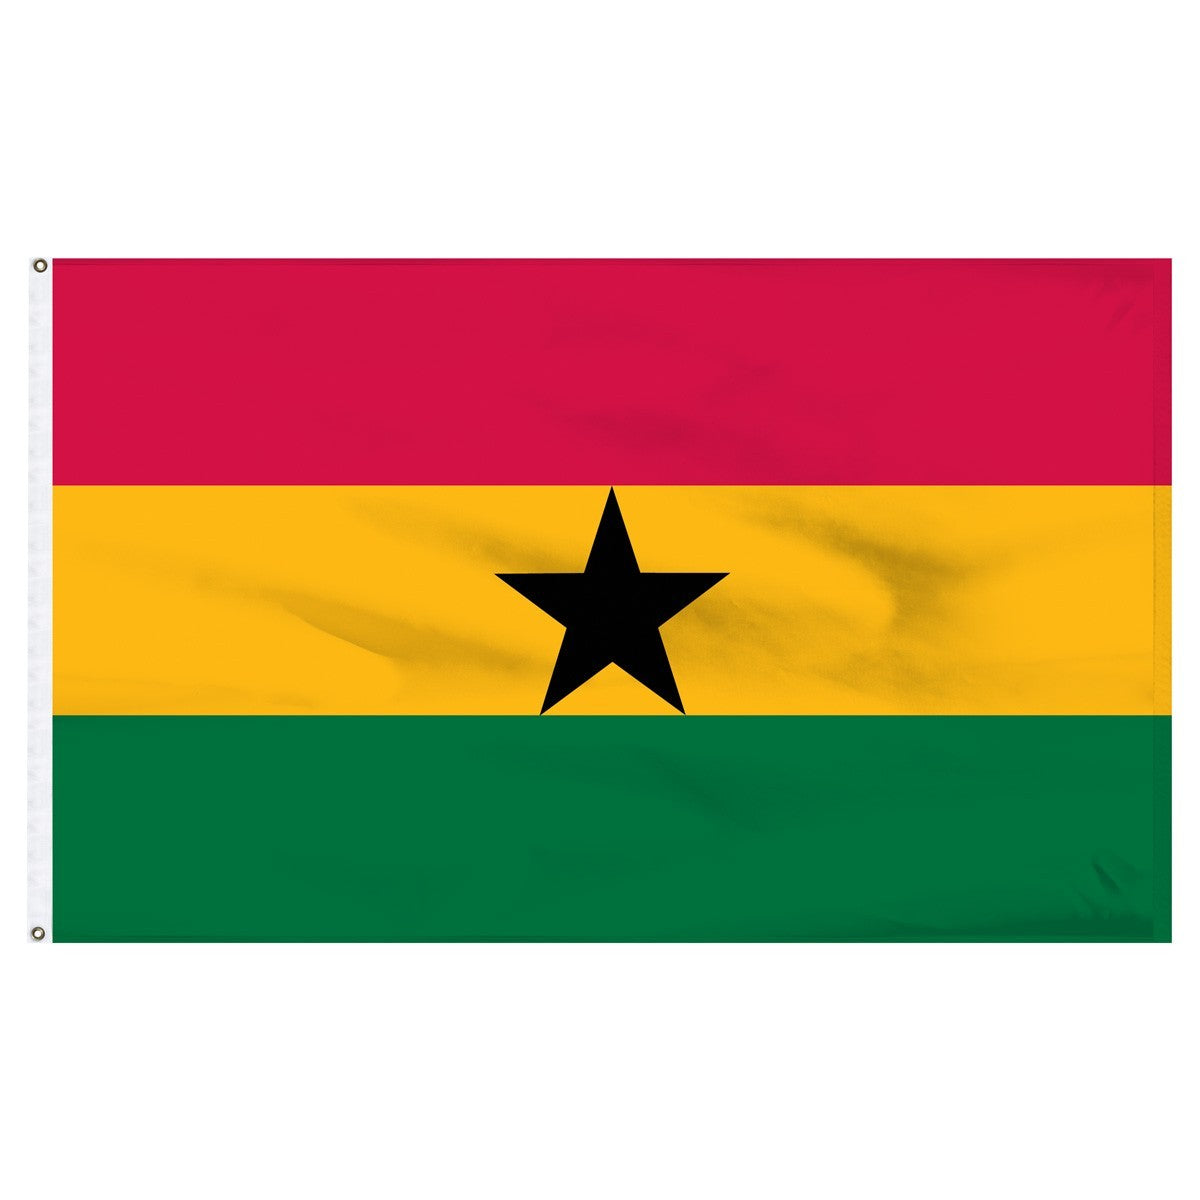 Ghana 5' x 8' Outdoor Nylon Flag